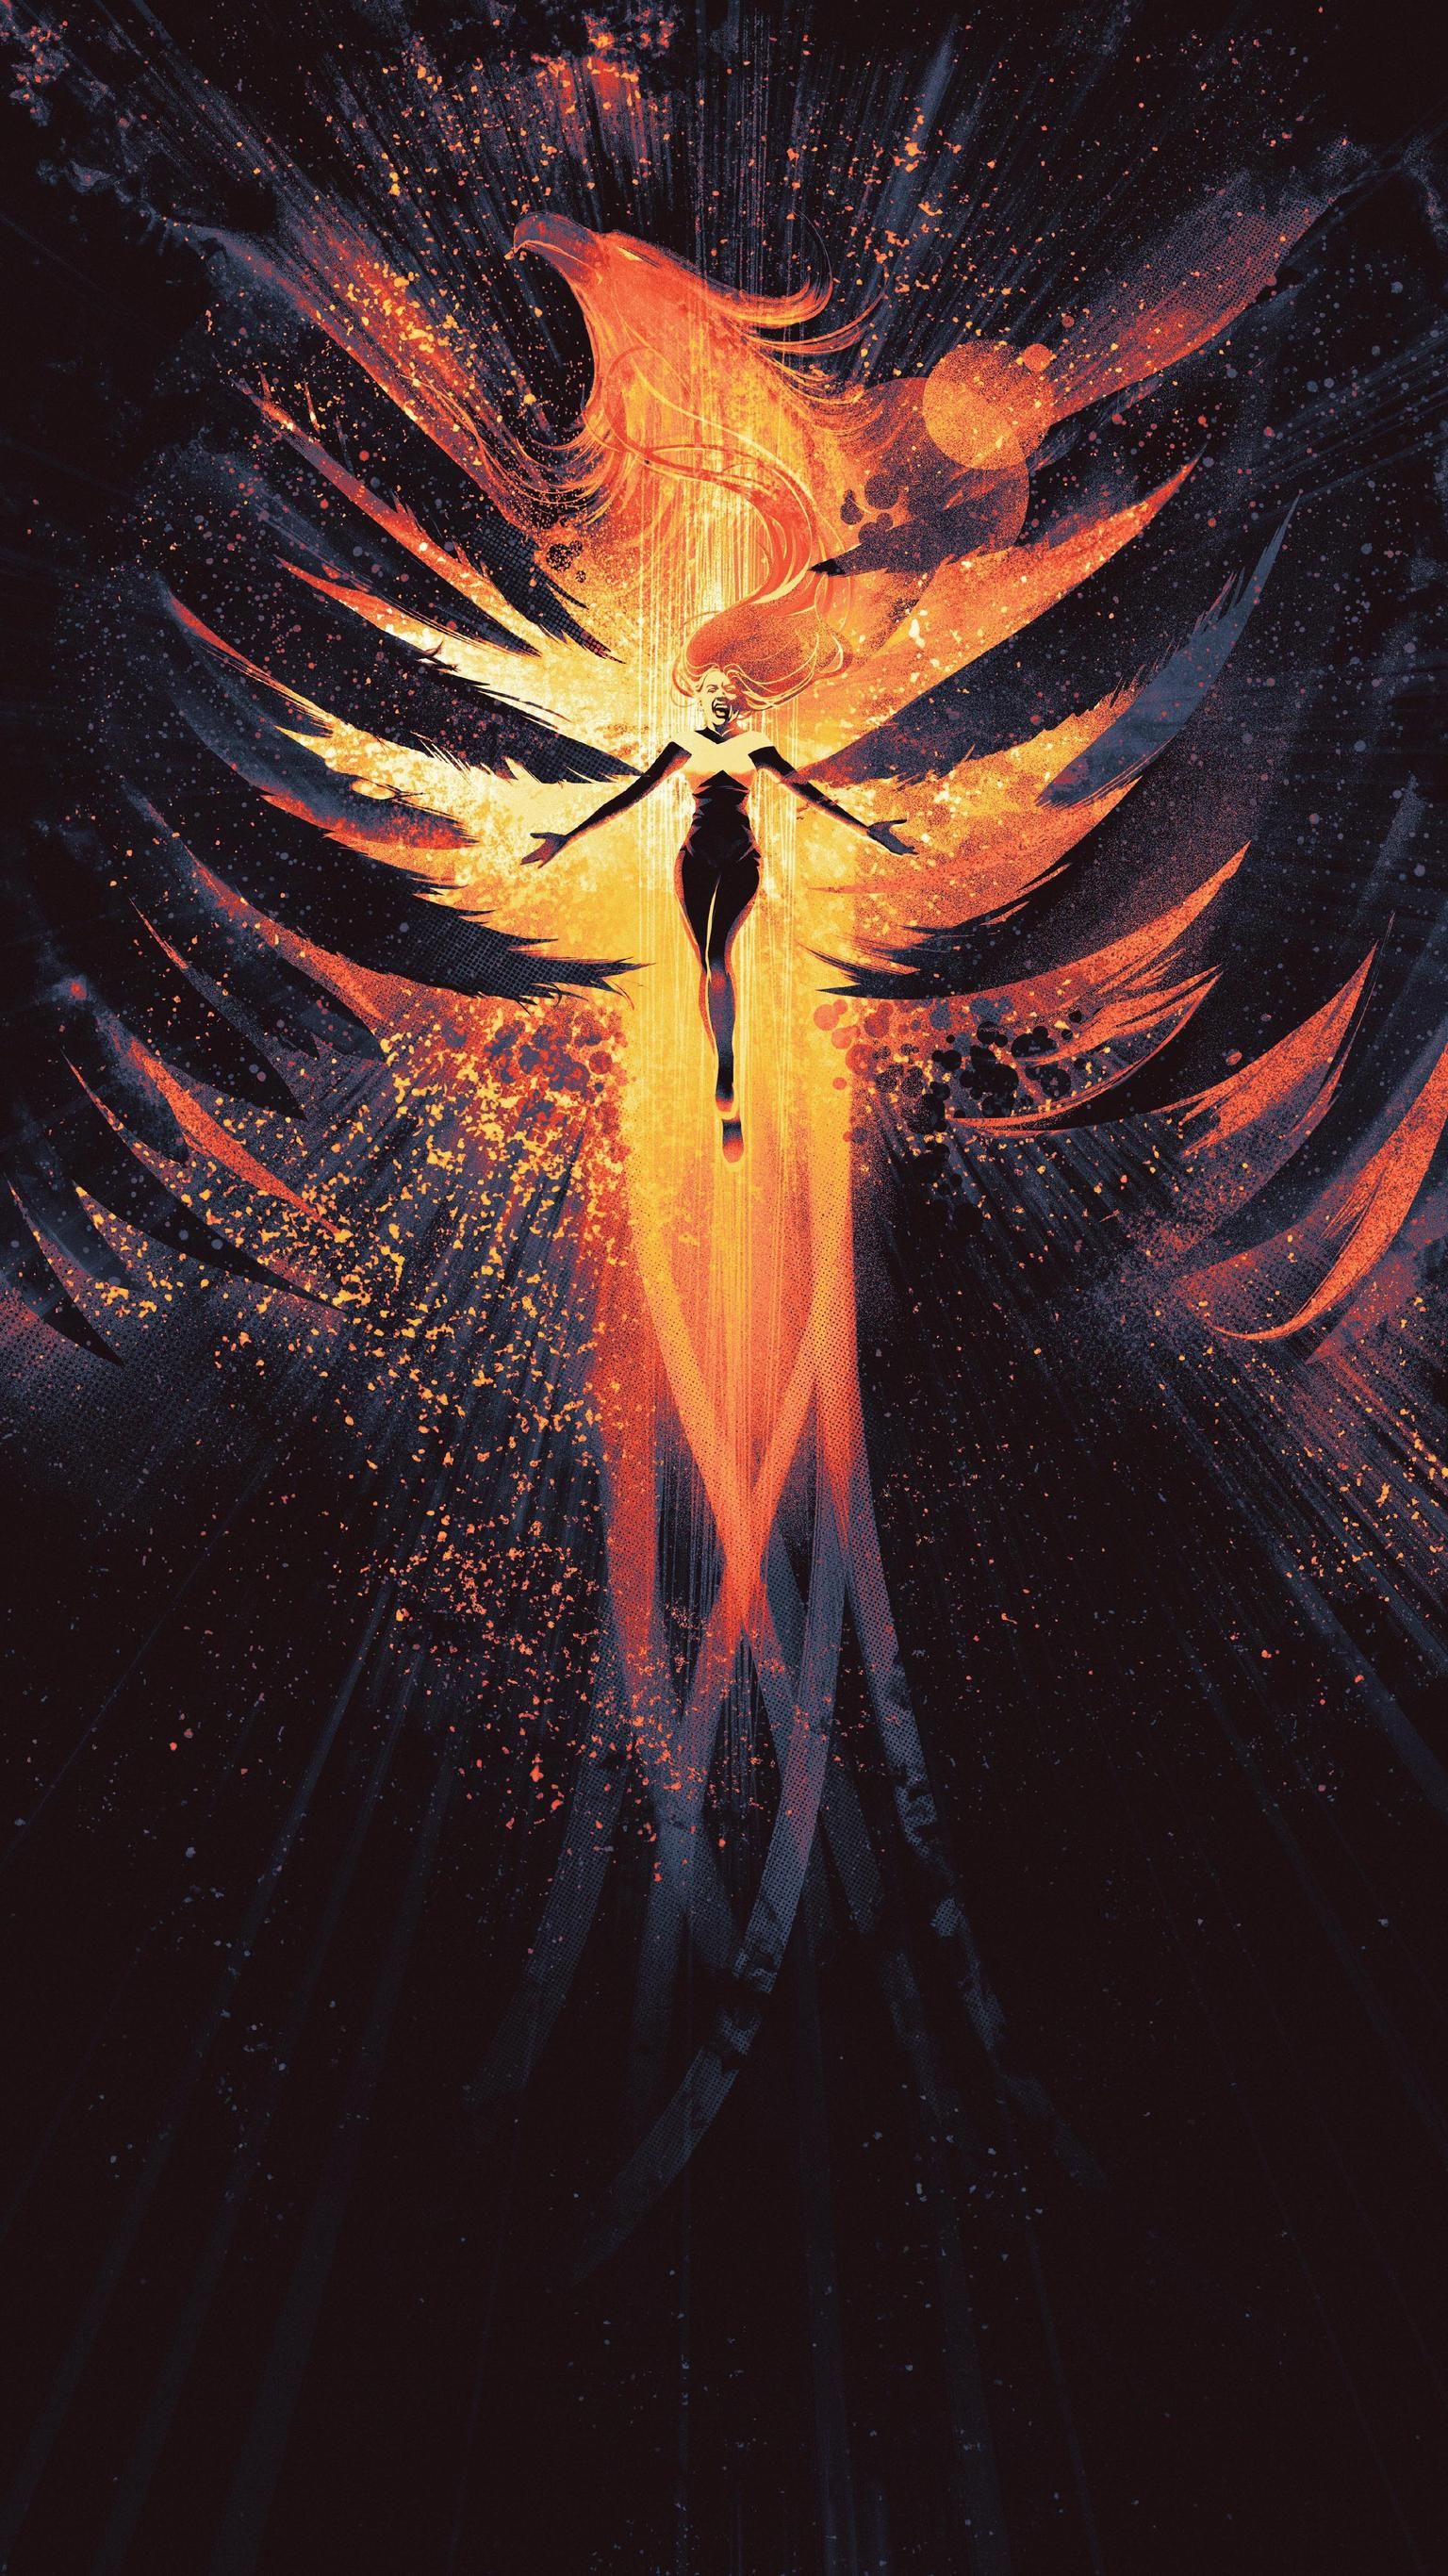 Dark Phoenix (2019) Phone Wallpaper. Moviemania. Phoenix wallpaper, Phoenix artwork, Dark phoenix